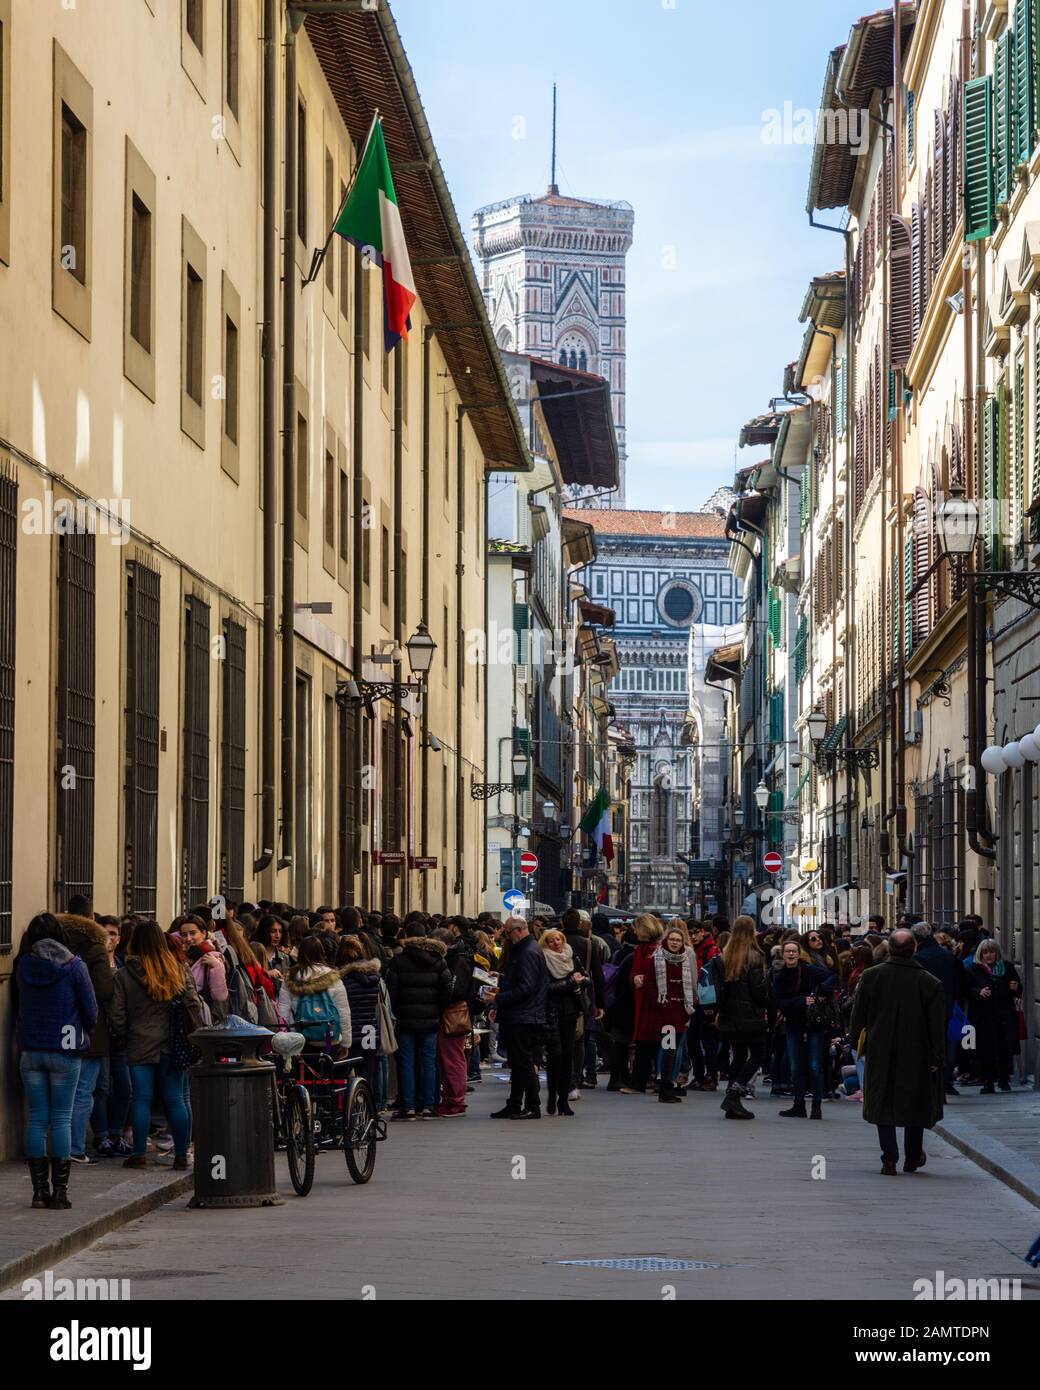 Florenz, Italien - 23. März 2018: Touristenmassen warten auf Museen in der Altstadt von Florenz, mit dem Dom in der Ferne. Stockfoto